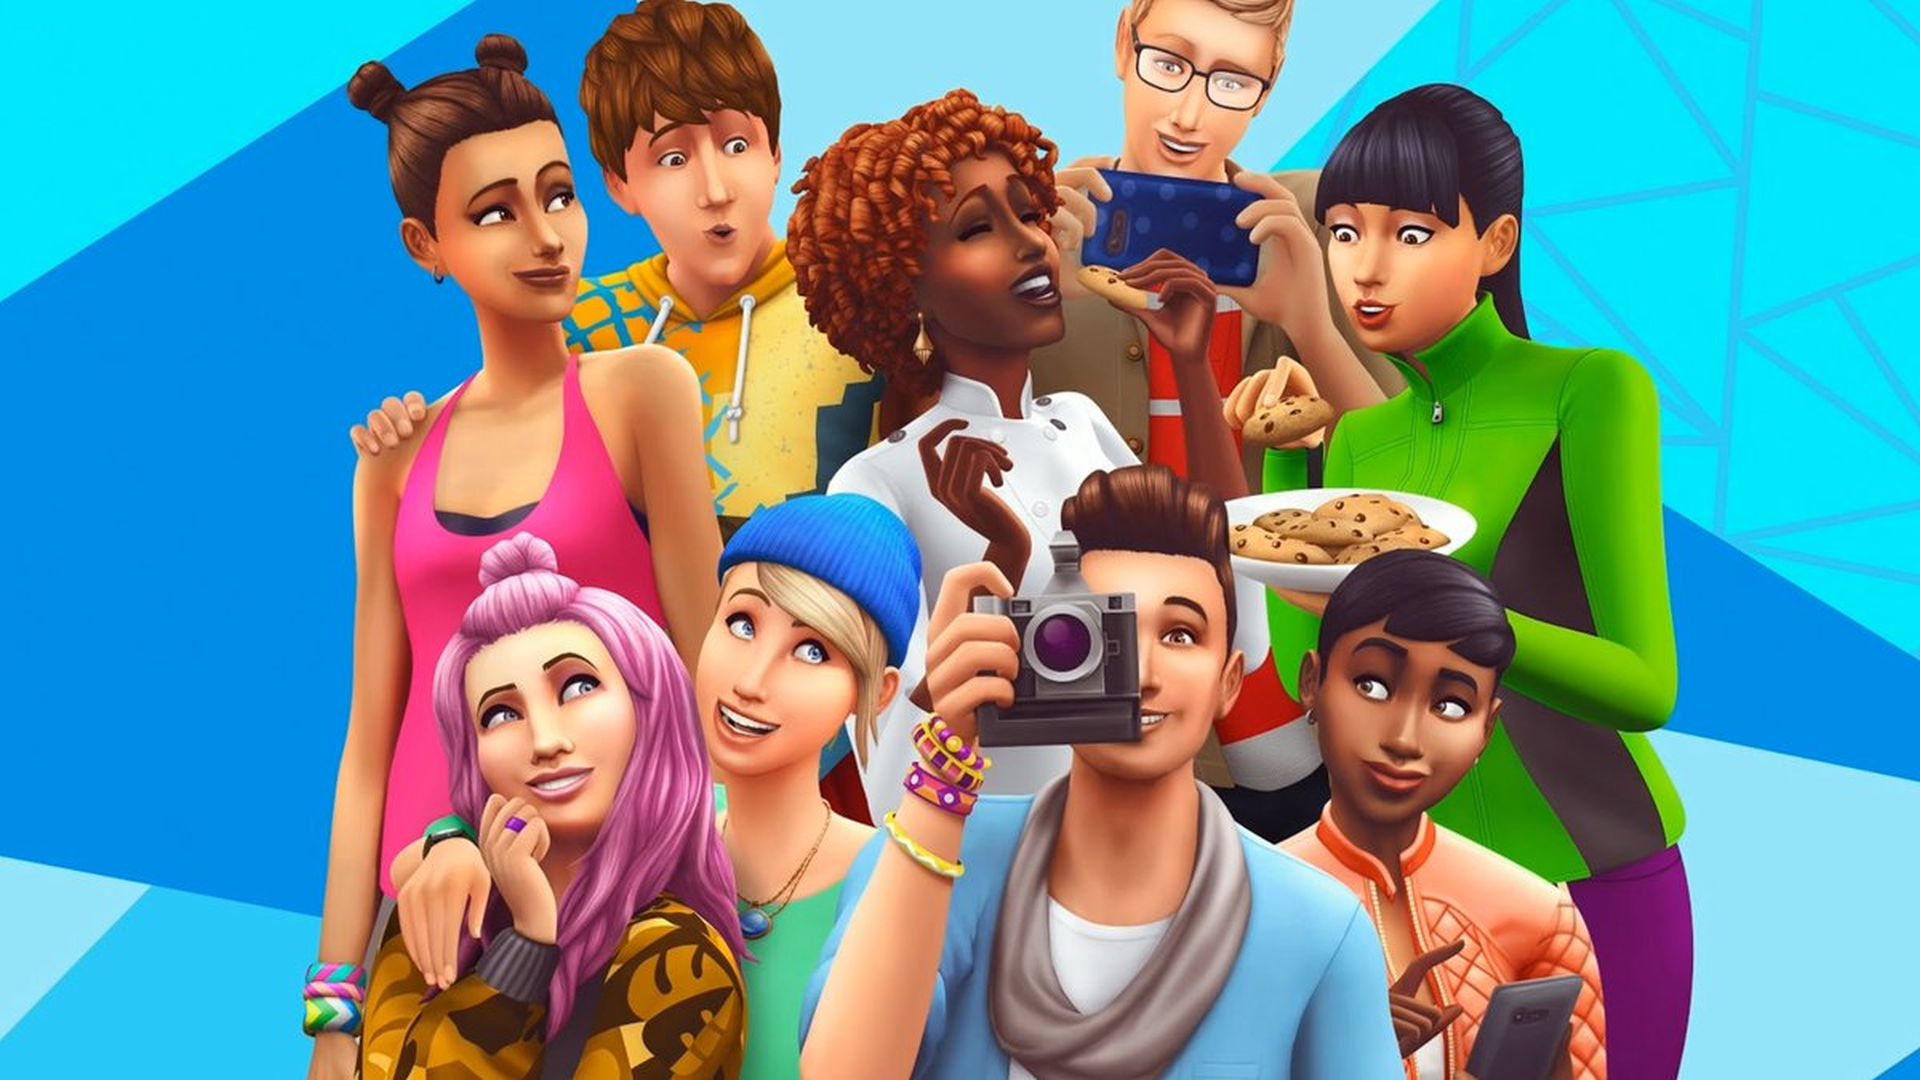 The Sims 5 به صورت رایگان در دسترس قرار خواهد گرفت